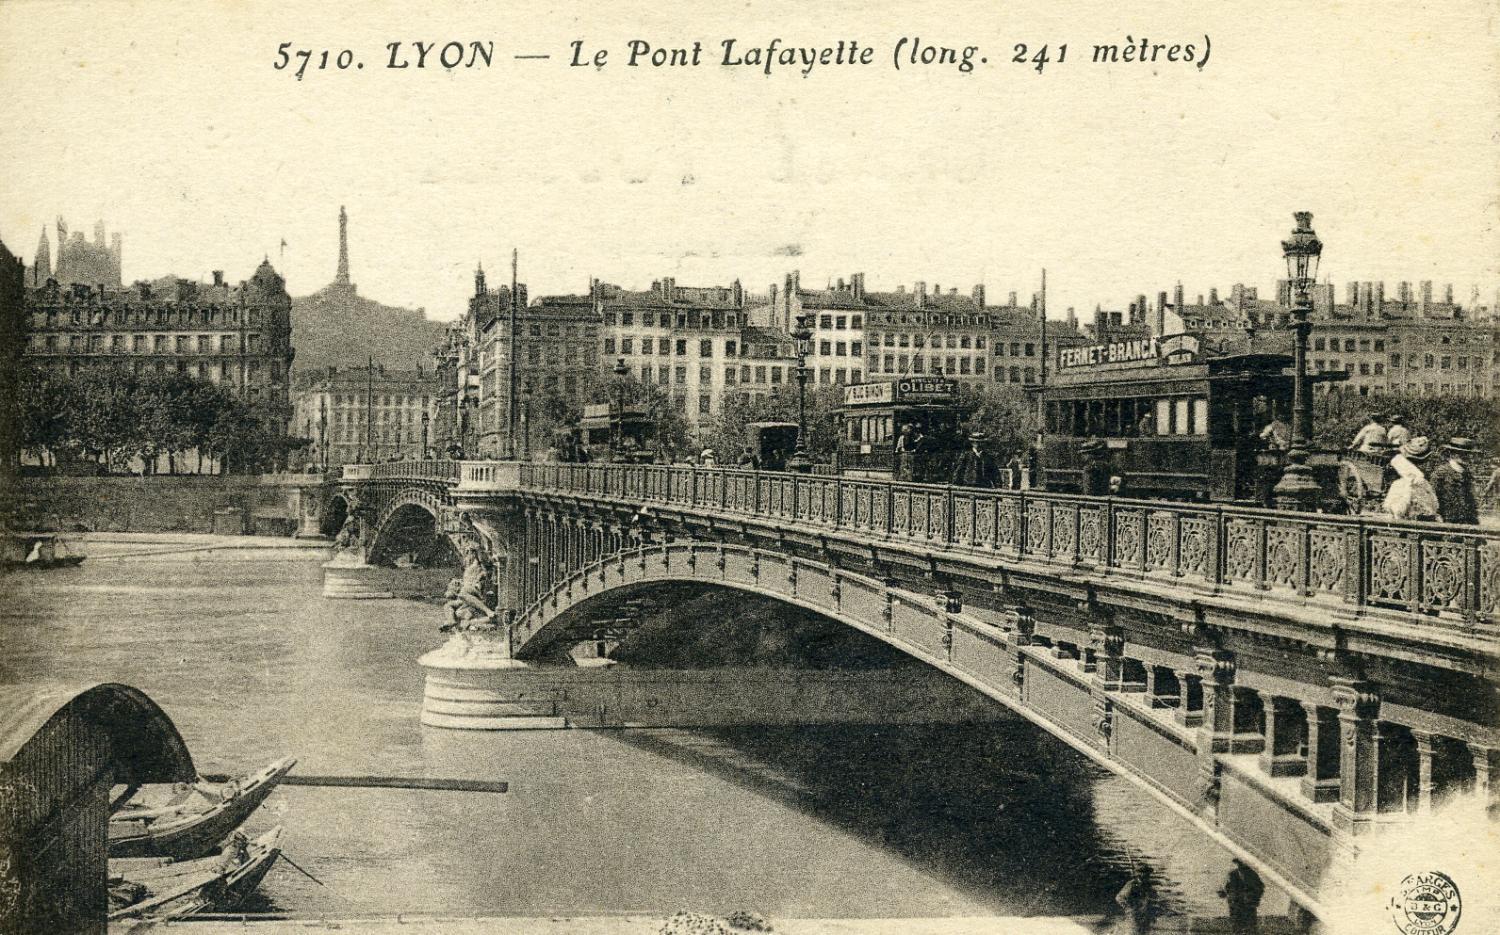 Lyon - Le Pont Lafayette (long. 241 mètres)